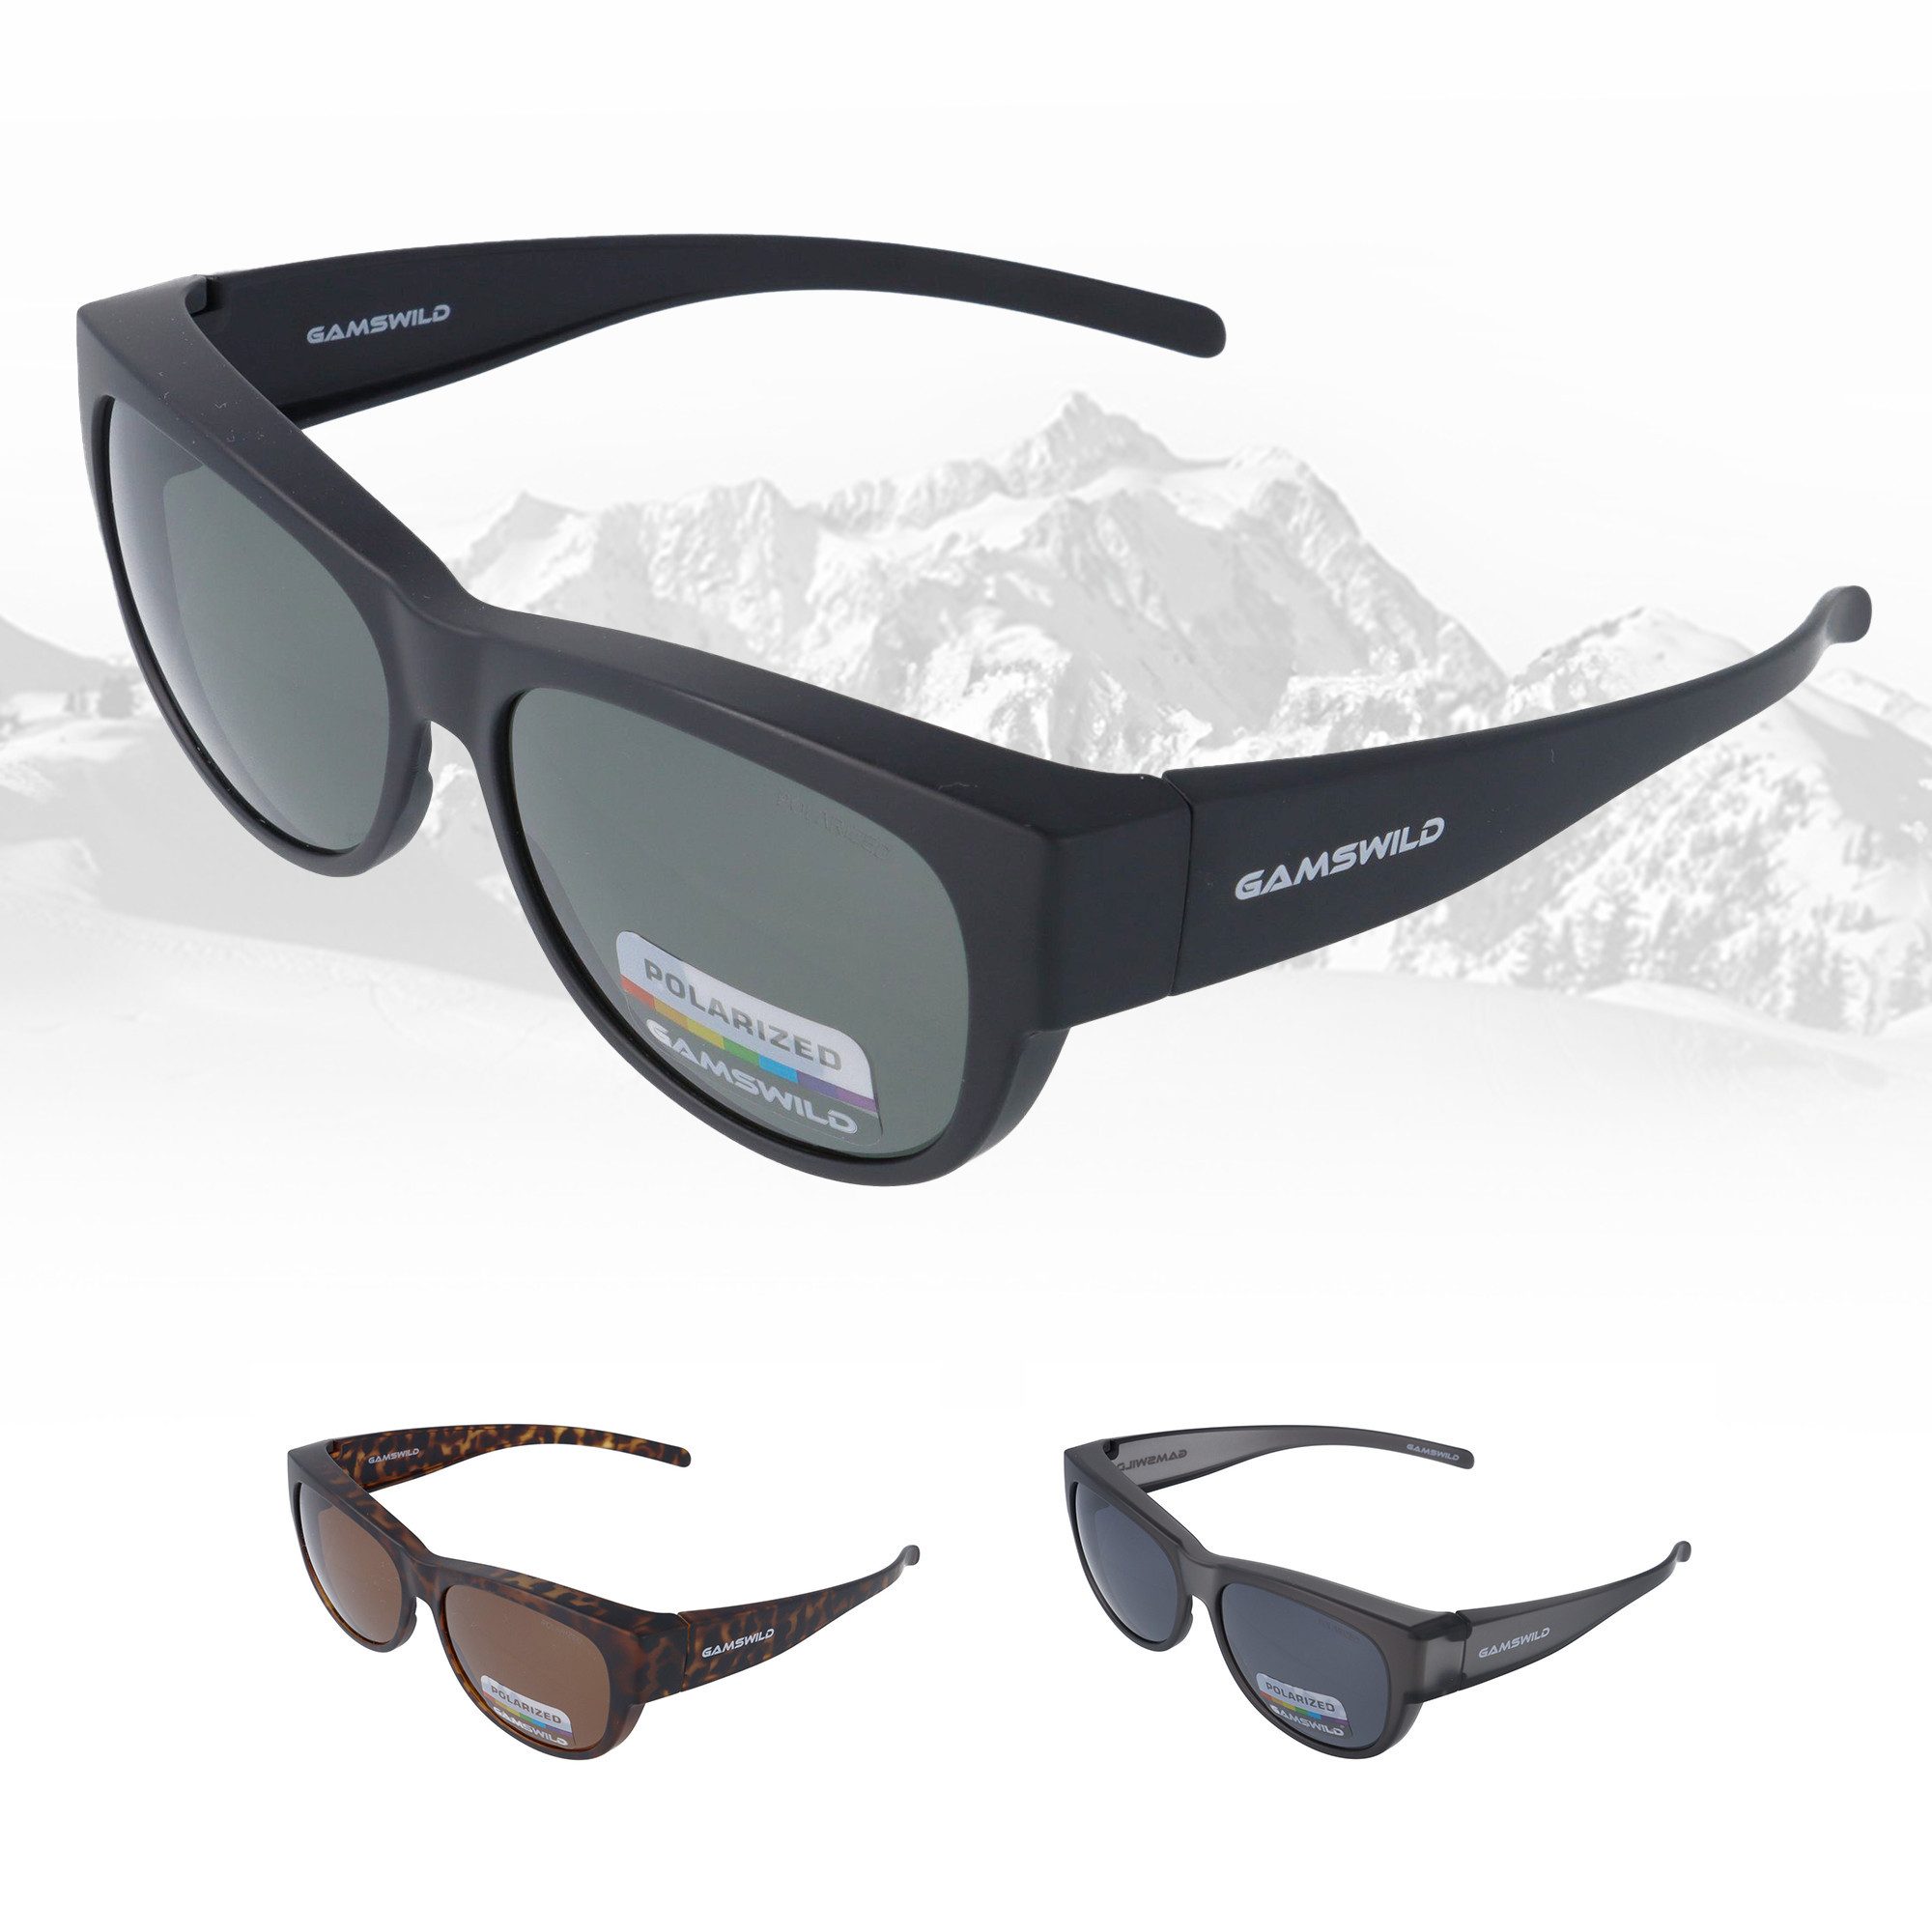 Gamswild Sonnenbrille UV400 Sportbrille Überbrille, polarisiert, universelle Passform Damen Herren Modell WS4032 in schwarz, braun, grau